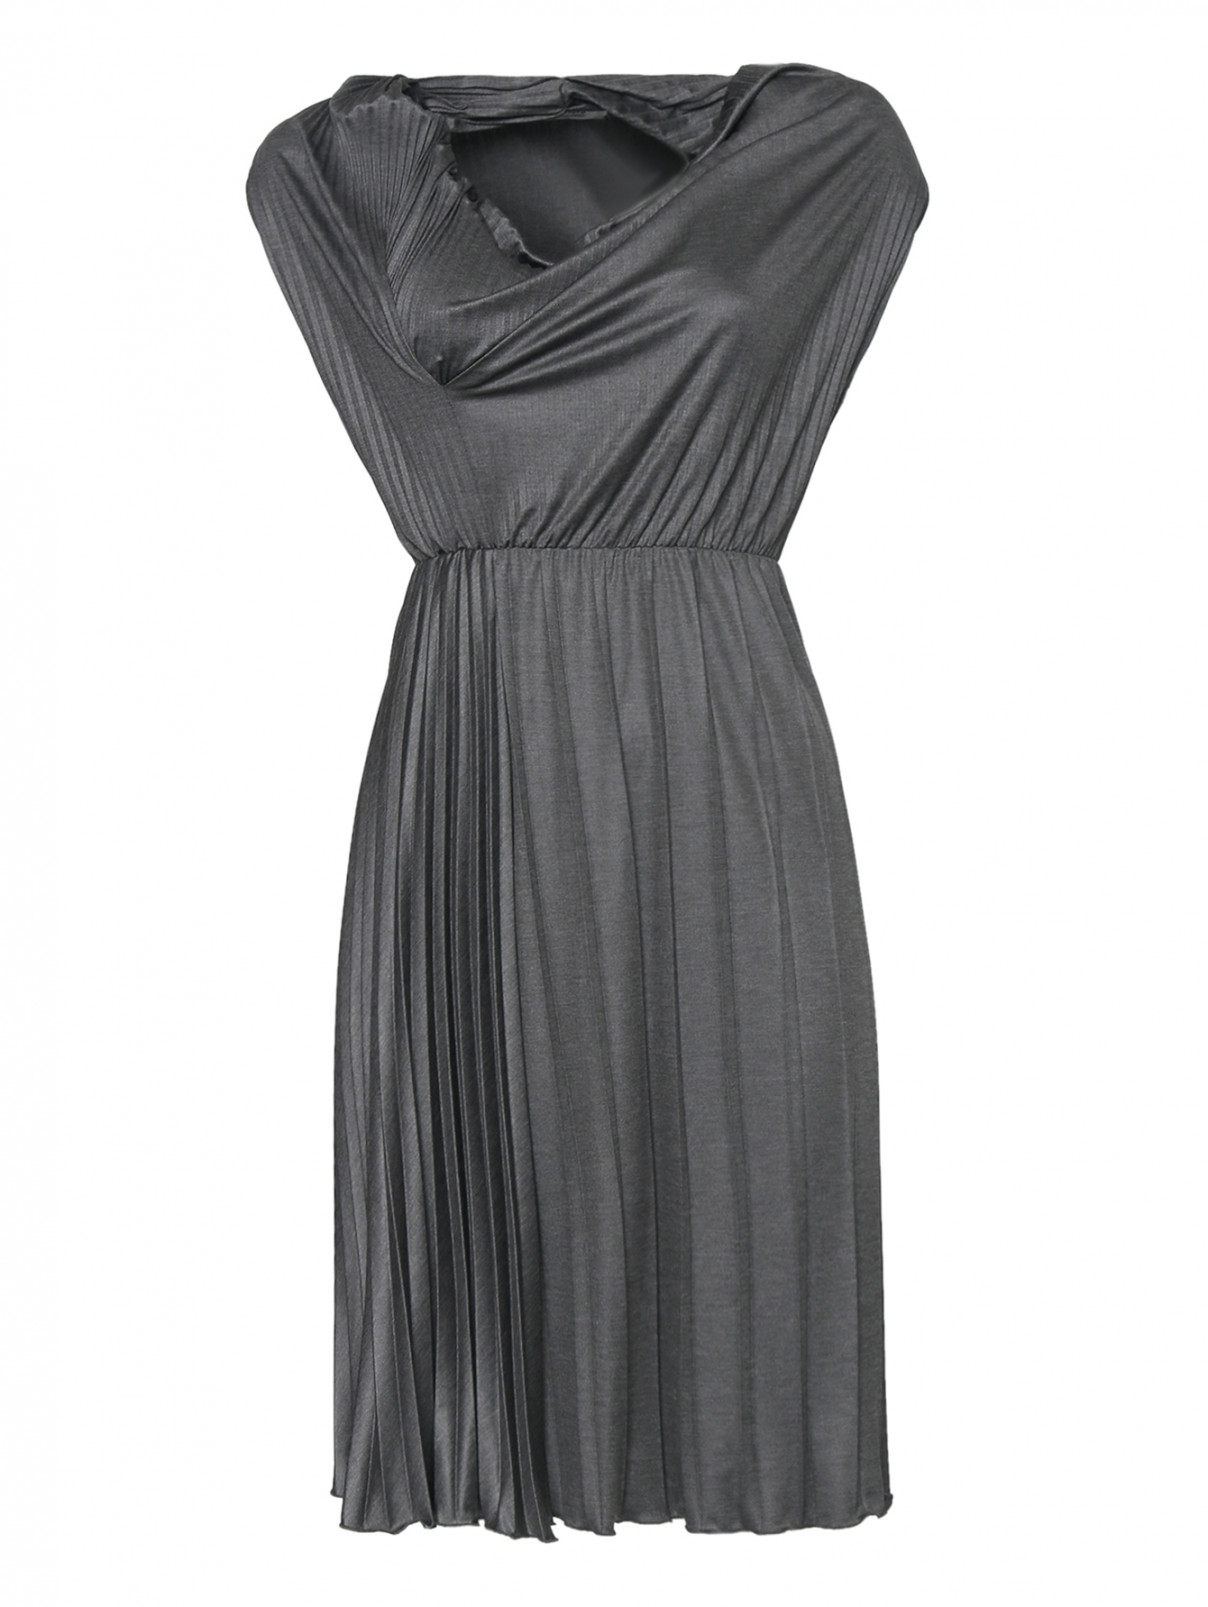 Платье плиссированное, со складкой Moschino Cheap&Chic  –  Общий вид  – Цвет:  Серый